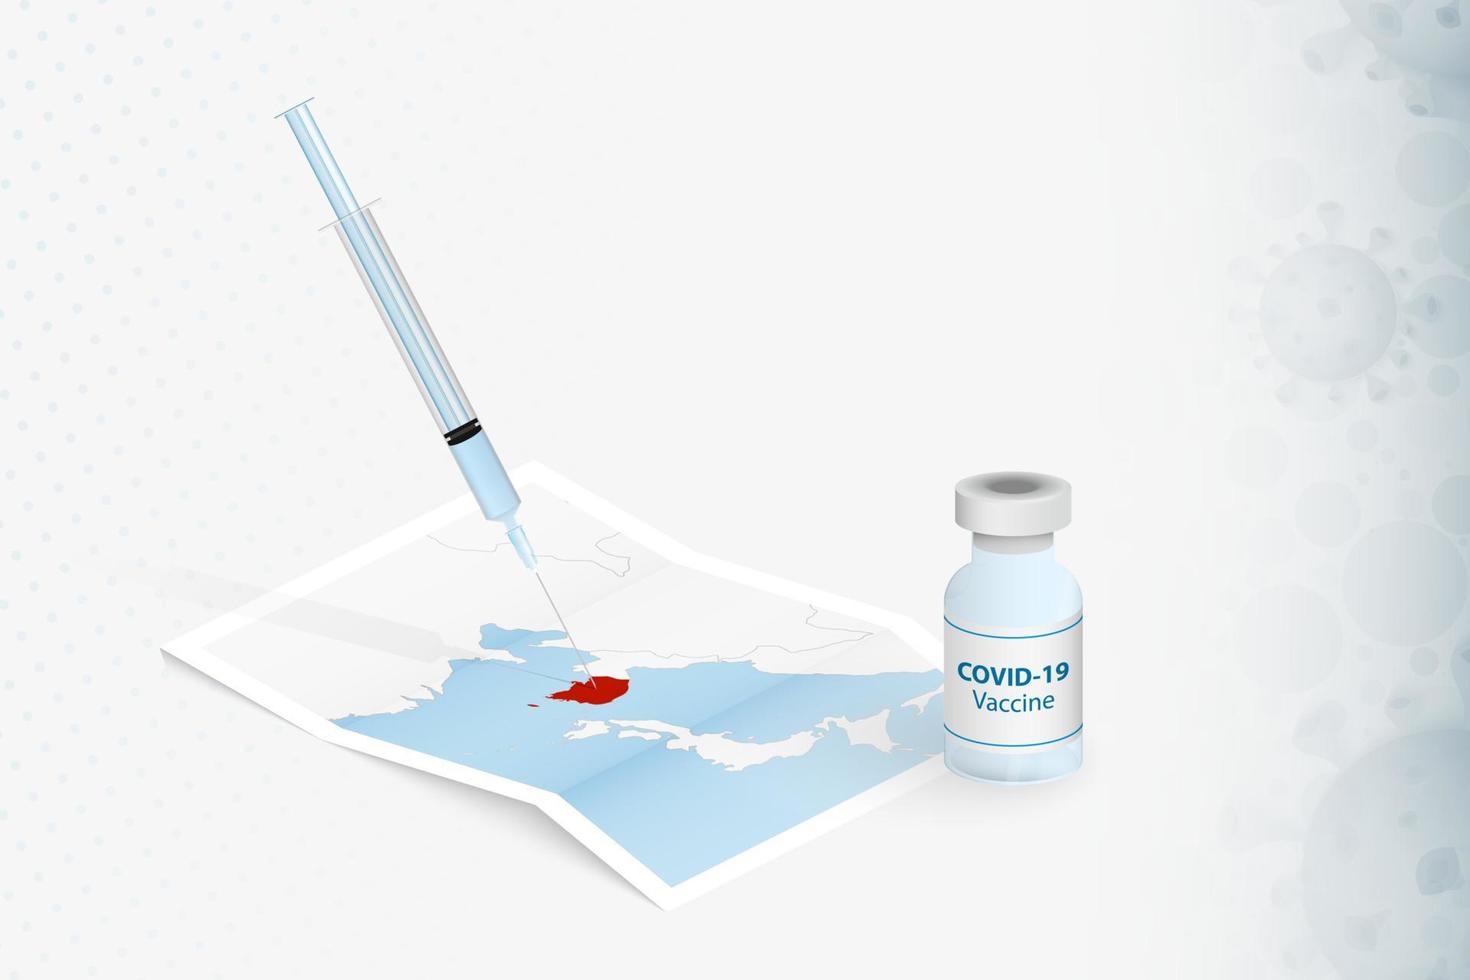 Zuid-Korea vaccinatie, injectie met covid-19 vaccin in kaart van Zuid-Korea. vector